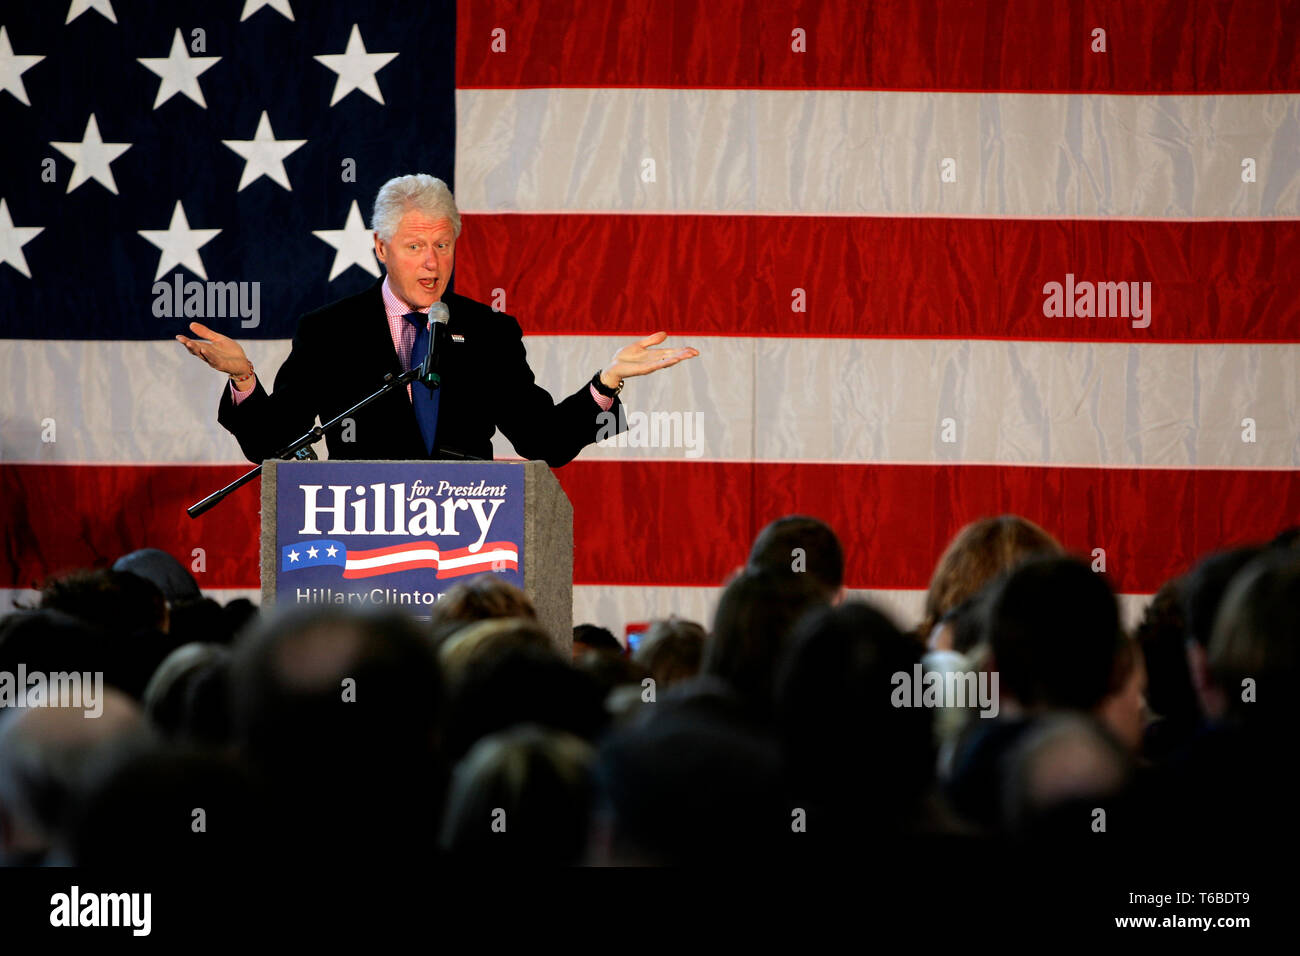 El ex presidente Bill Clinton campañas en Lakewood para su esposa Hillary Rodham Clinton, que está en marcha contra Obama como candidato en las elecciones presidenciales de 2009. Foto de stock